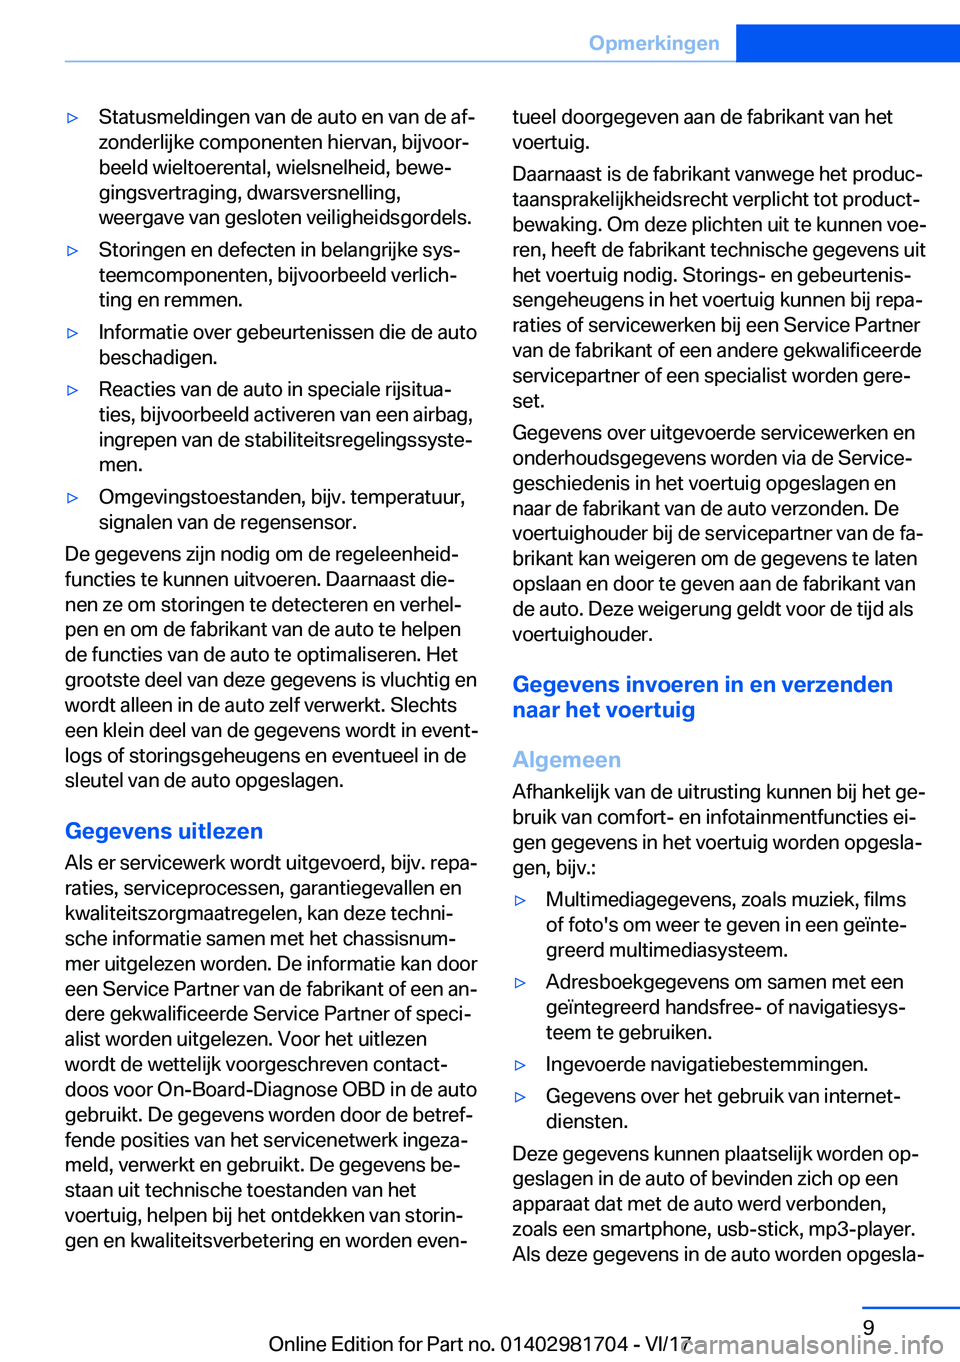 BMW M4 2018  Instructieboekjes (in Dutch) 'y�S�t�a�t�u�s�m�e�l�d�i�n�g�e�n� �v�a�n� �d�e� �a�u�t�o� �e�n� �v�a�n� �d�e� �a�fj
�z�o�n�d�e�r�l�i�j�k�e� �c�o�m�p�o�n�e�n�t�e�n� �h�i�e�r�v�a�n�,� �b�i�j�v�o�o�rj
�b�e�e�l�d� �w�i�e�l�t�o�e�r